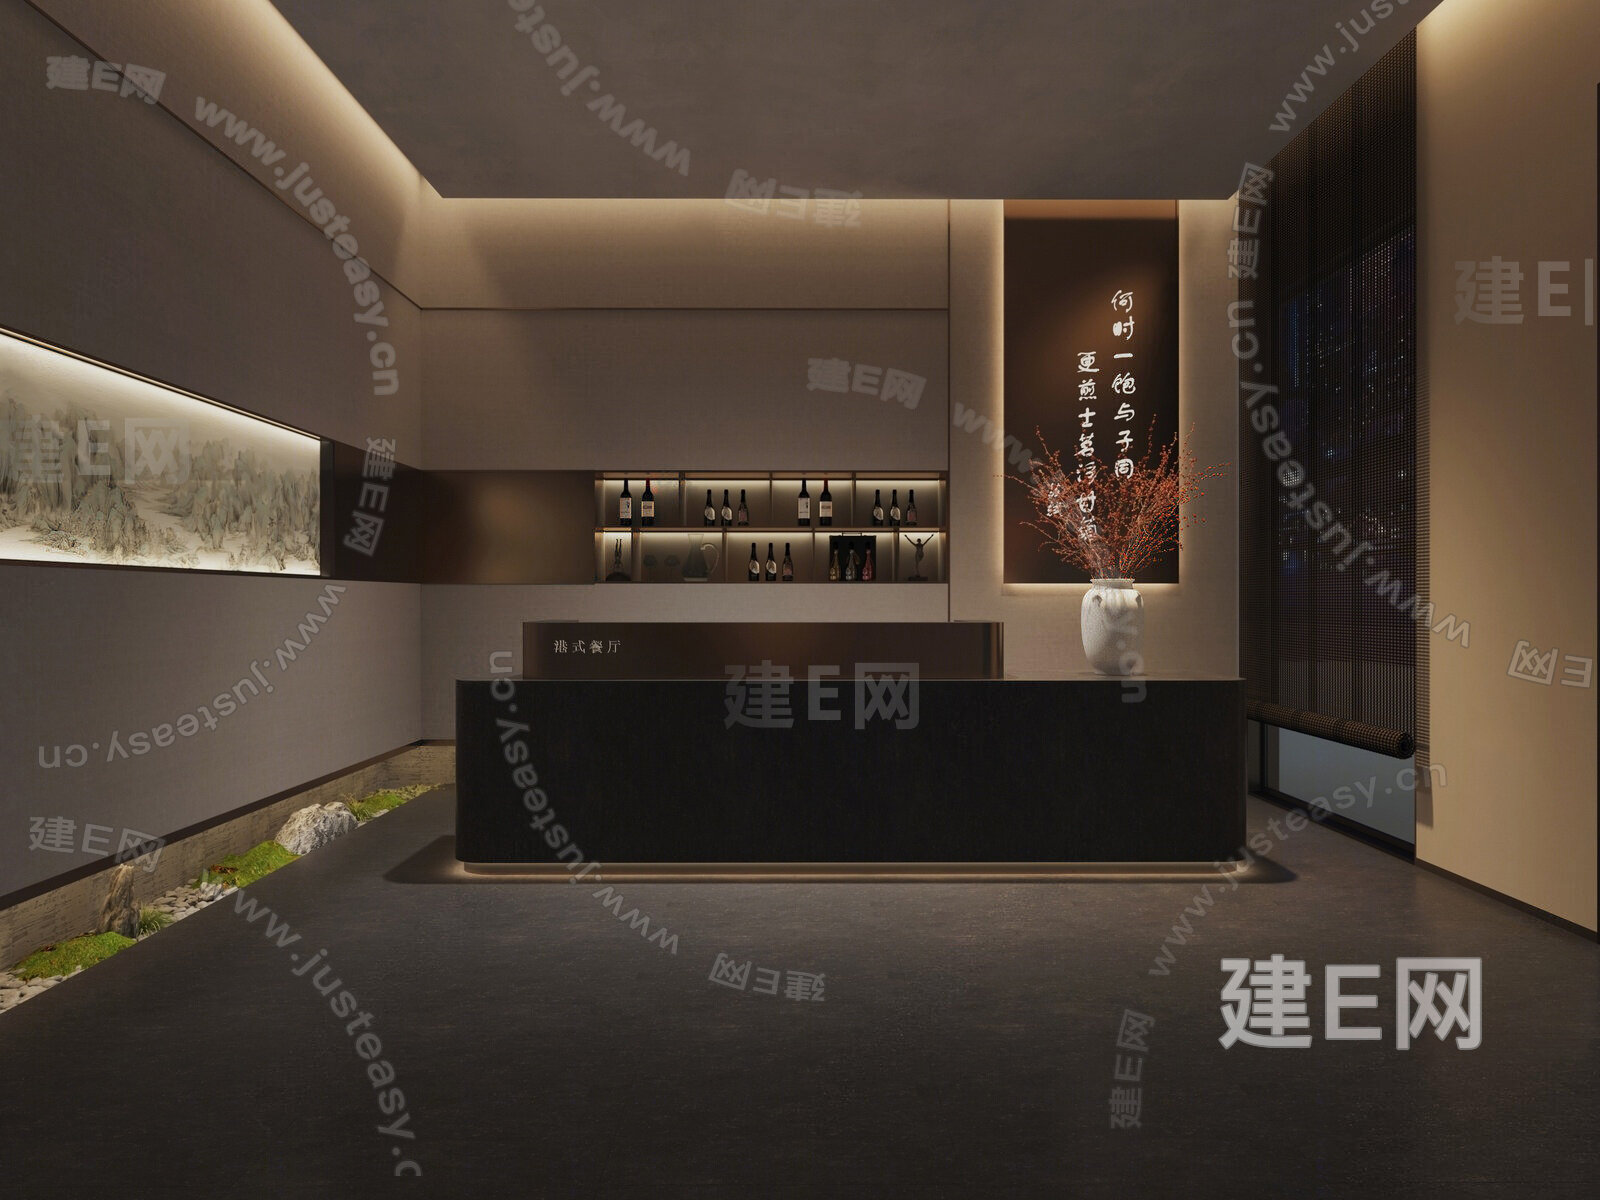 Z13-0627新中式酒店自助餐厅早餐厅餐台餐具算盘子装饰柜酒柜 - 草图大师模型